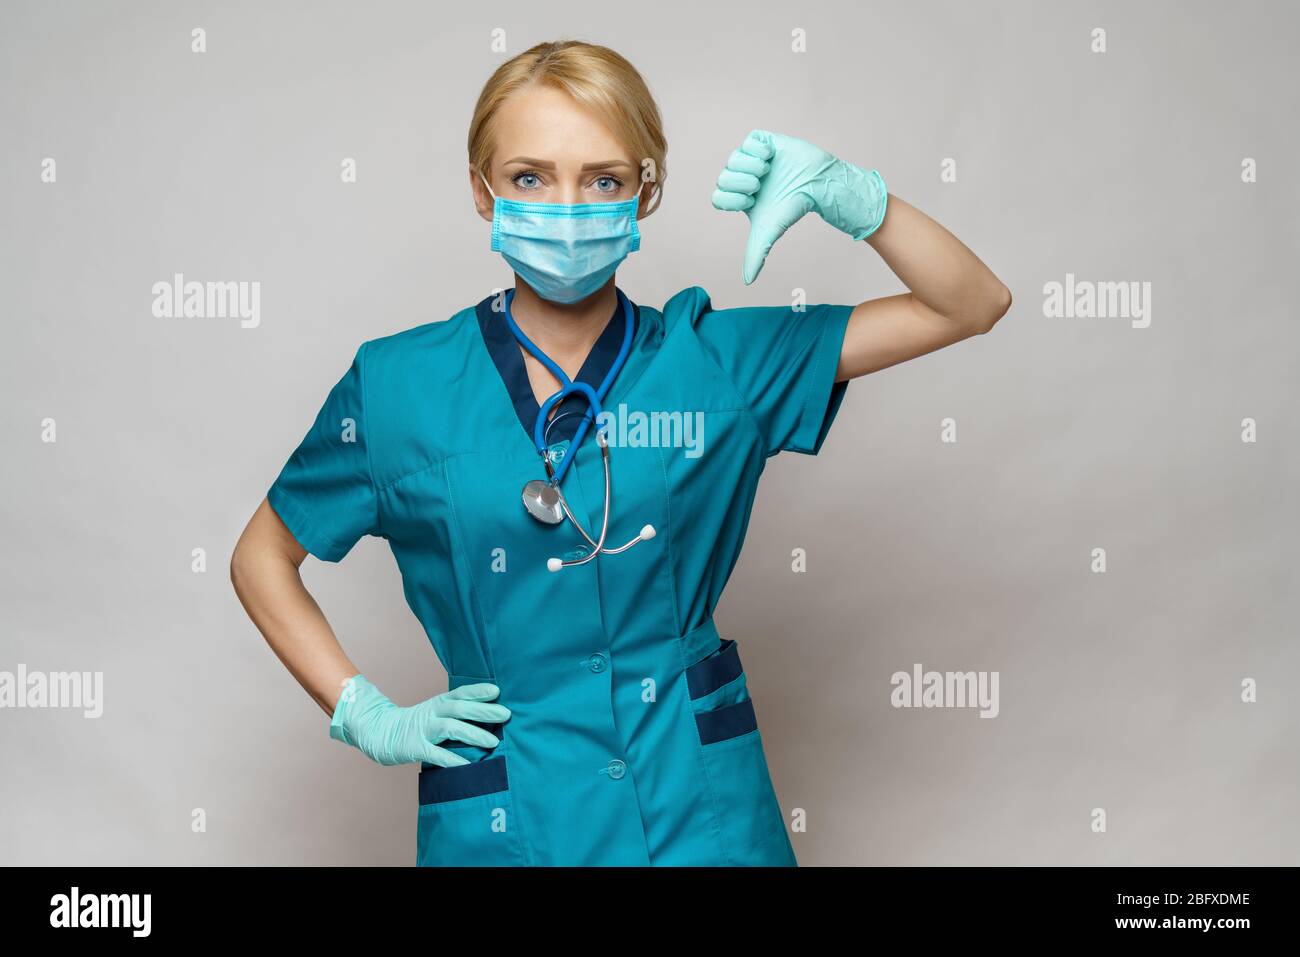 amateur nurse costume